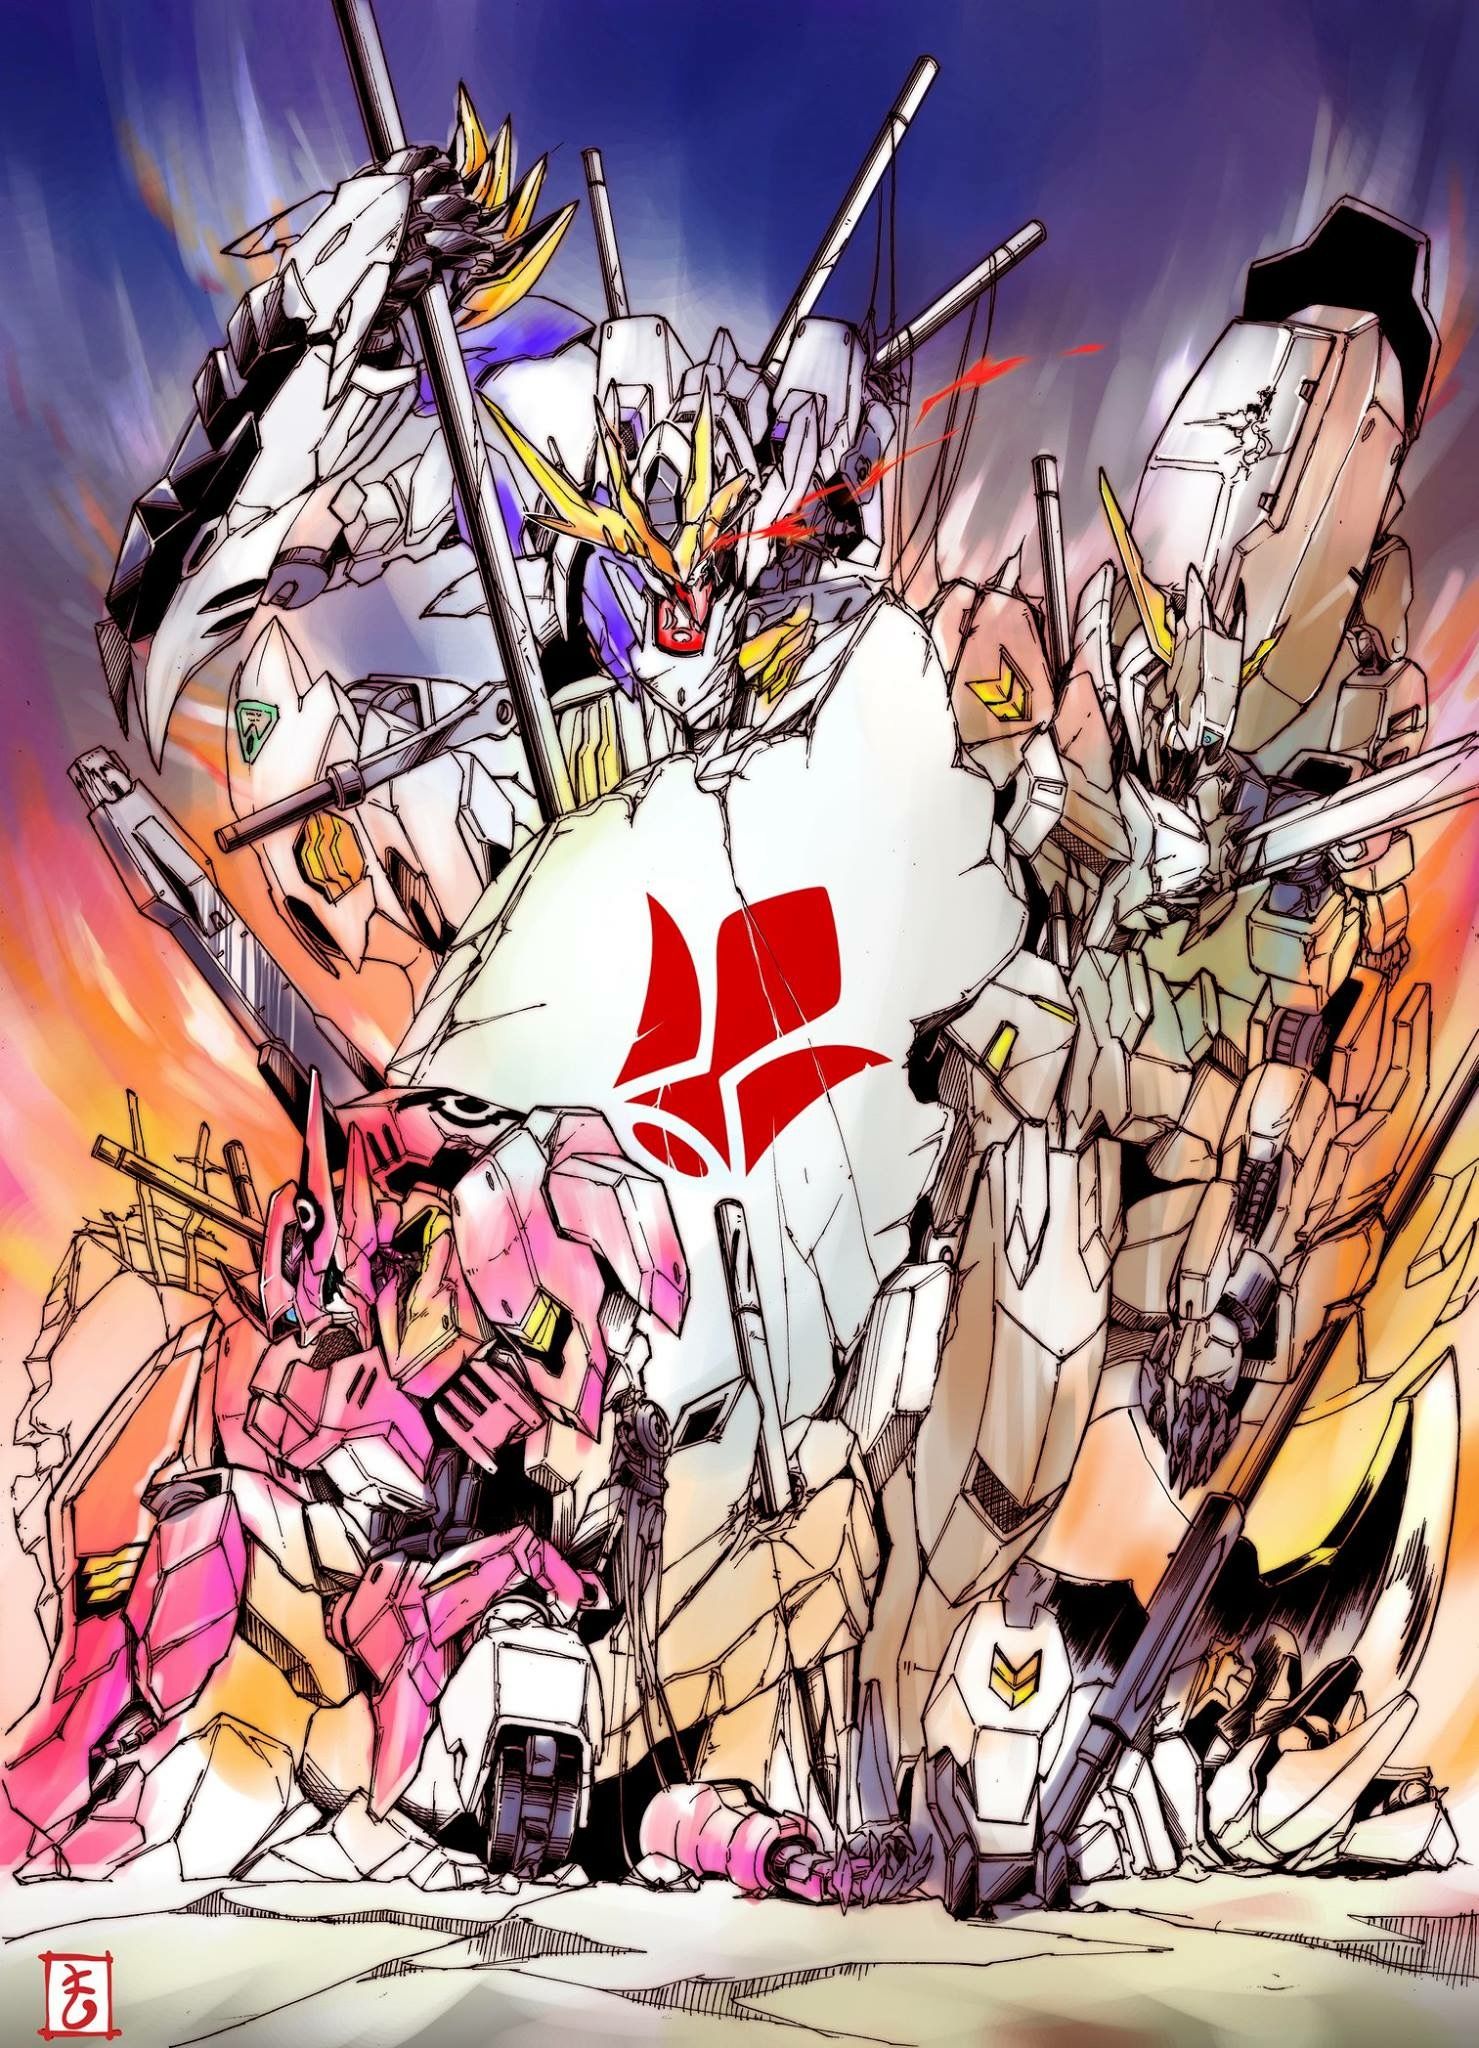 Gundam Flauros Wallpapers